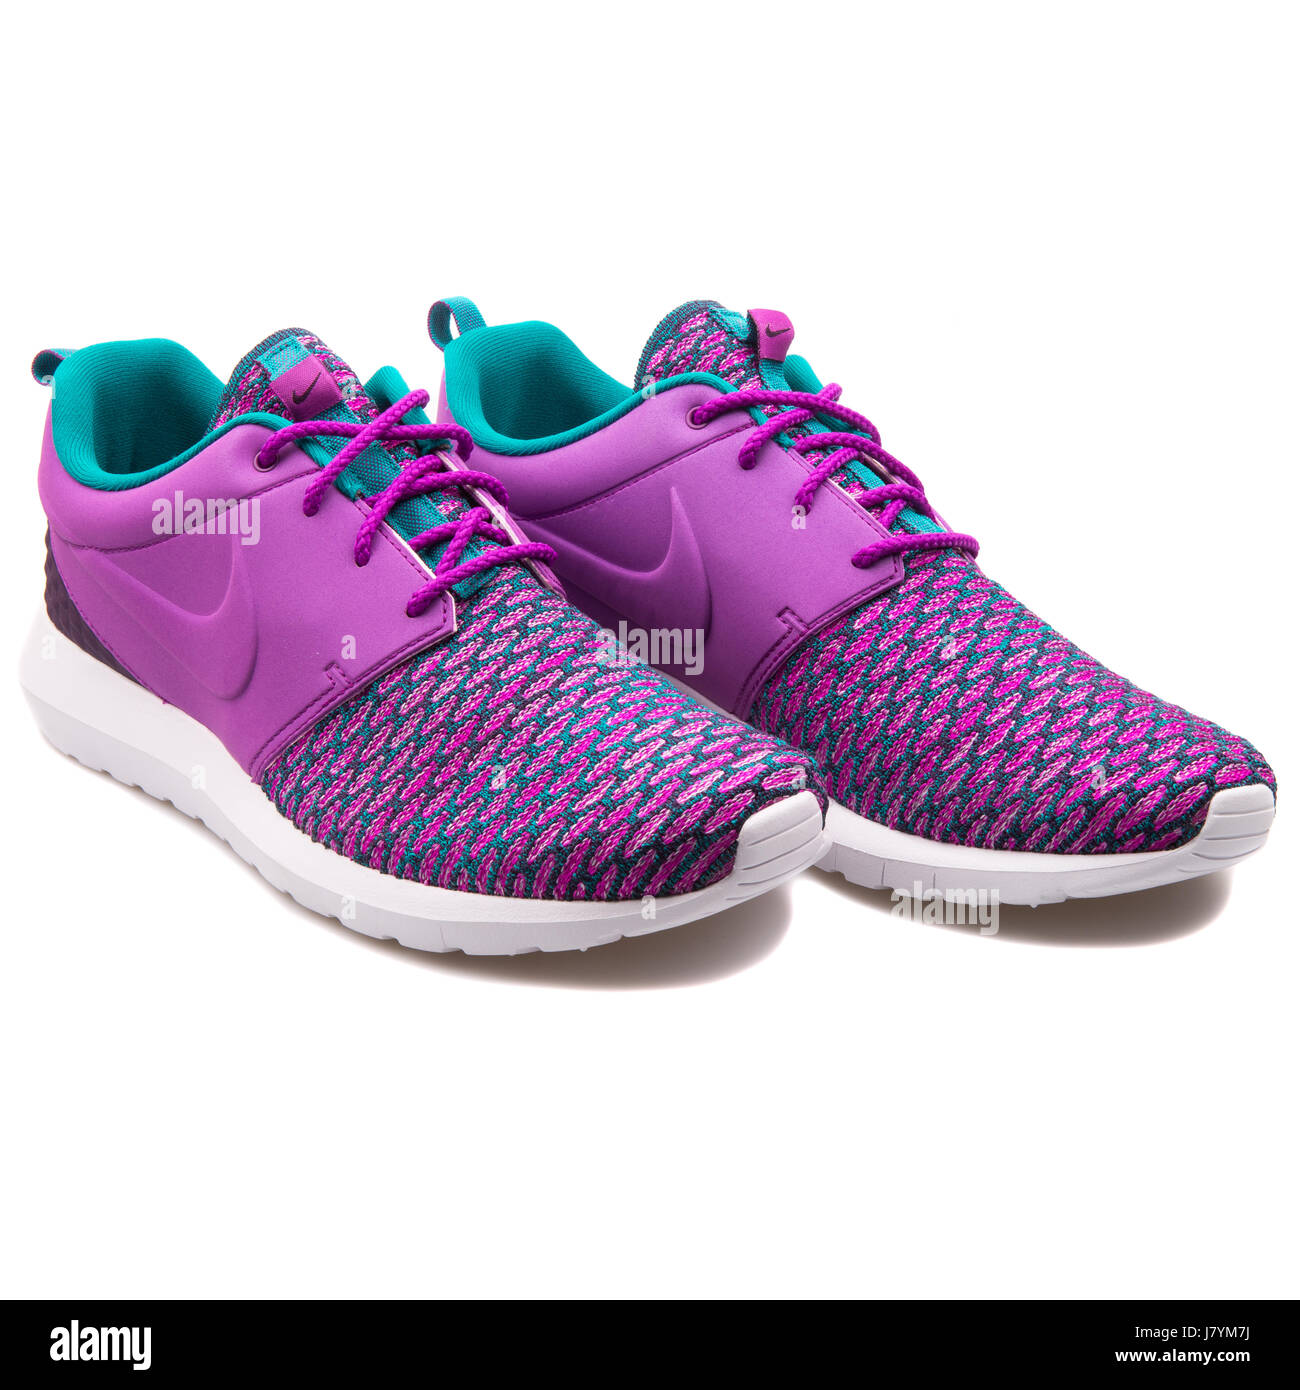 Nike Roshe NM Flyknit PRM lila Damen Running Sneaker - 746825-500  Stockfotografie - Alamy